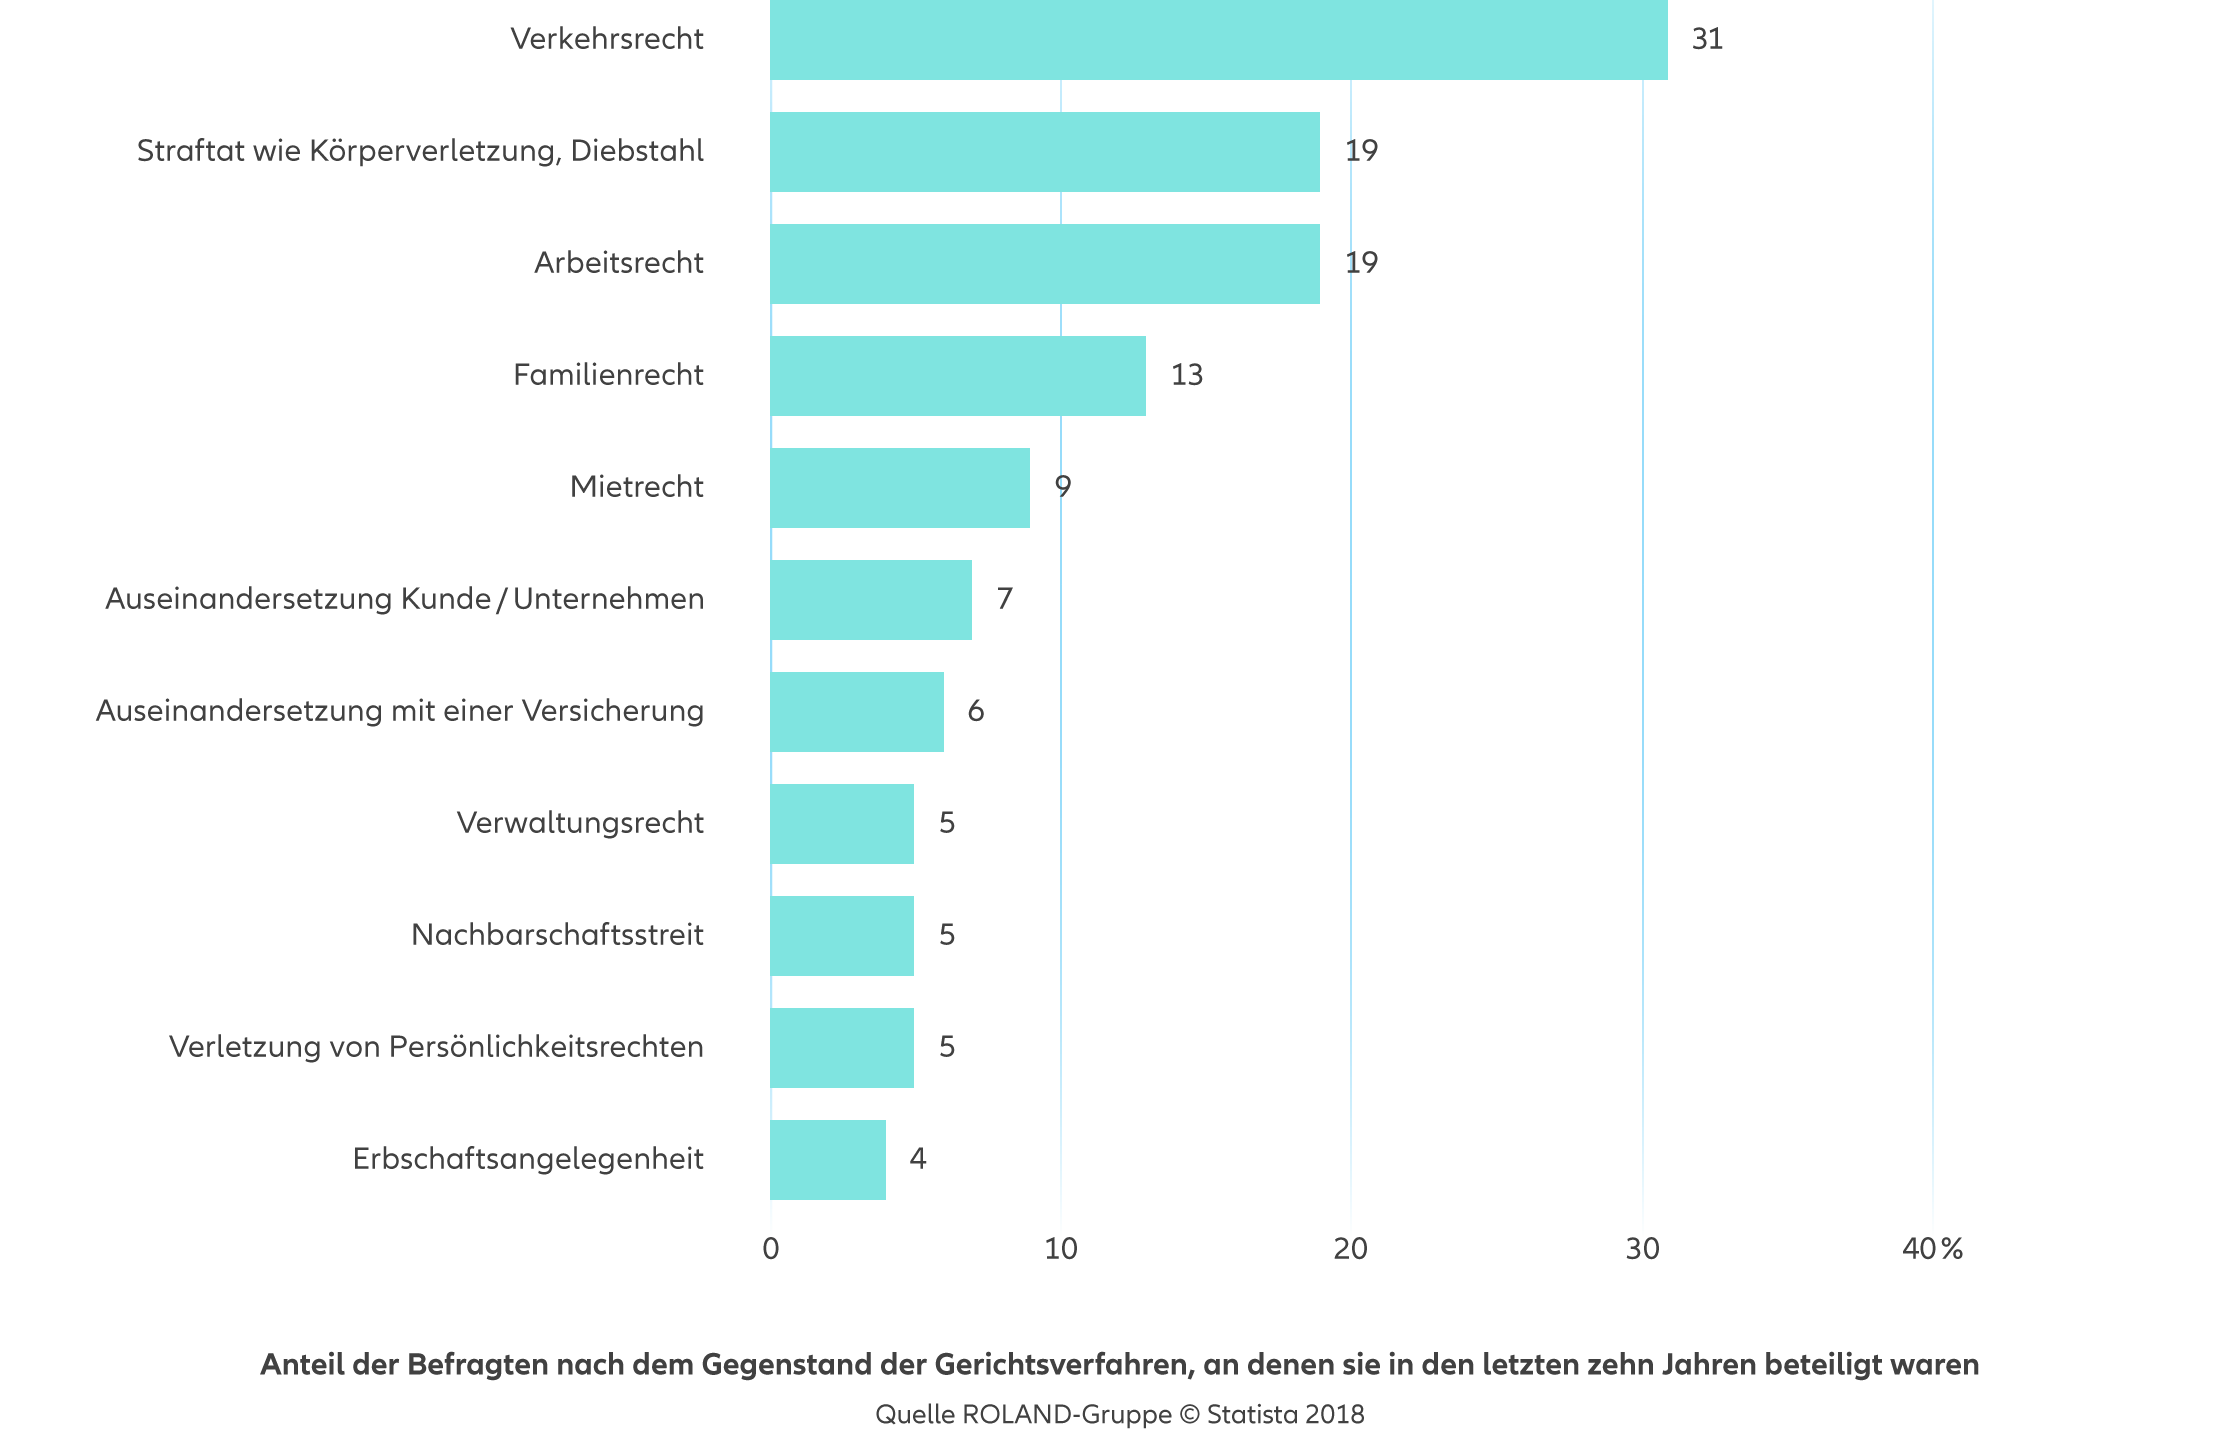 Allianz - Agentursuche Rechtsschutzversicherung Köln - Infografik: Anteil der Befragten nach dem Gegenstand der Gerichtsverfahren, an denen sie in den letzten 10 Jahren beteiligt waren in Deutschland